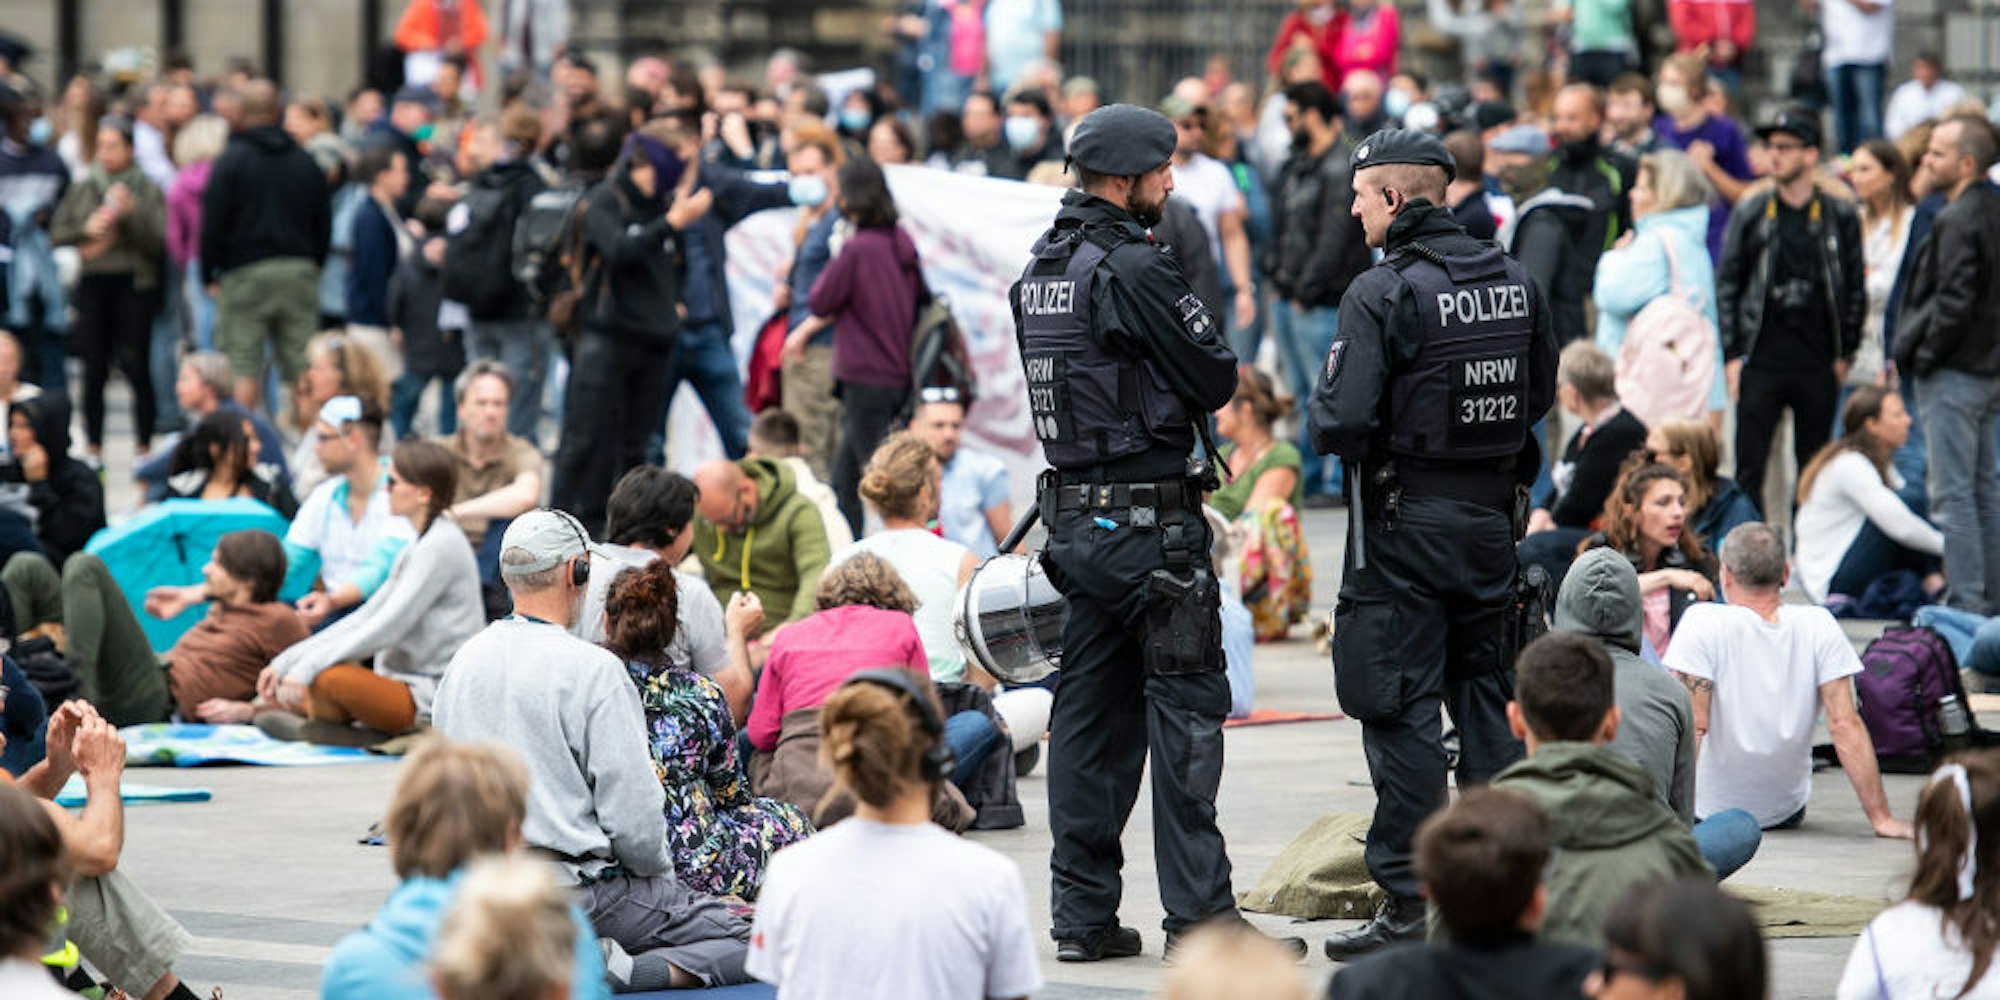 Roncalliplatz in Köln: Eine von zahlreichen, friedlichen Demonstrationen des Wochenendes